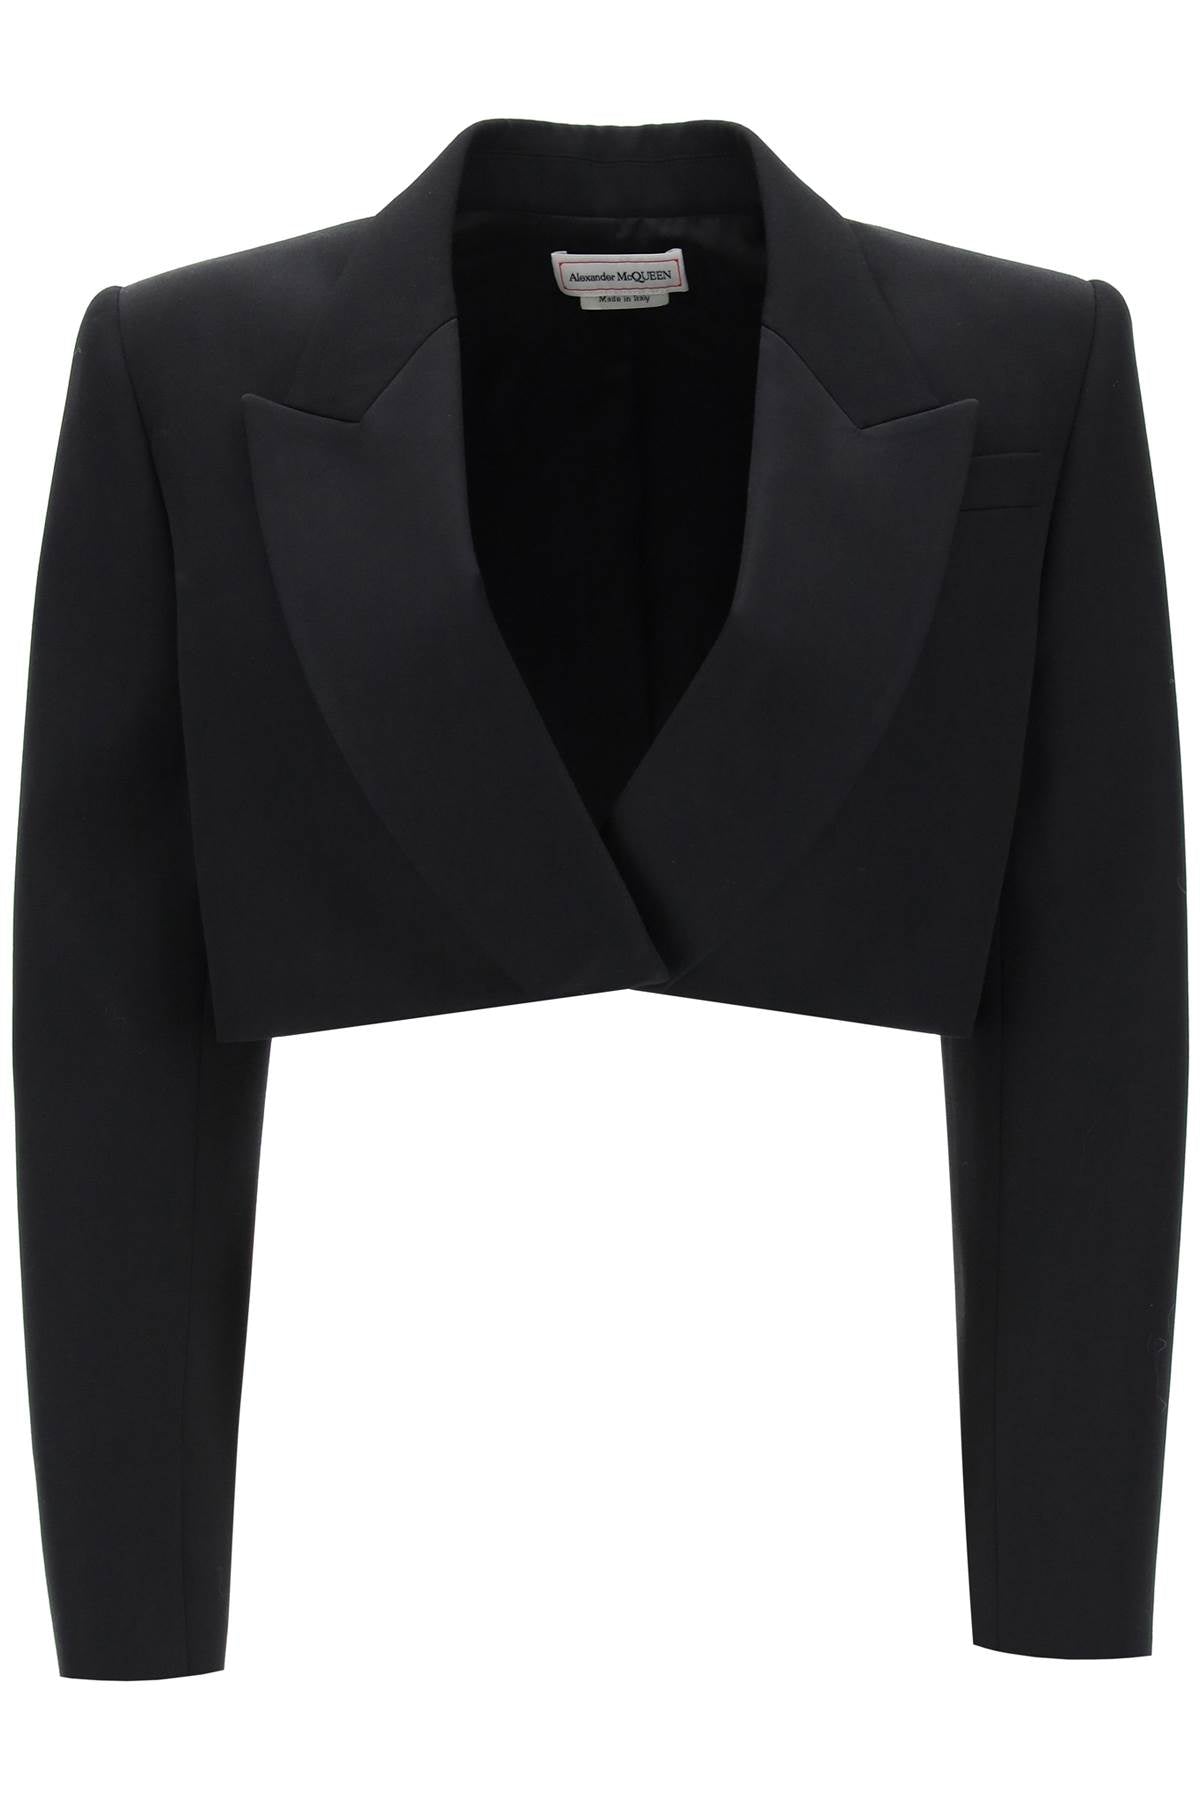 Shop Alexander Mcqueen Cropped Tuxedo Jacket In Black For Women